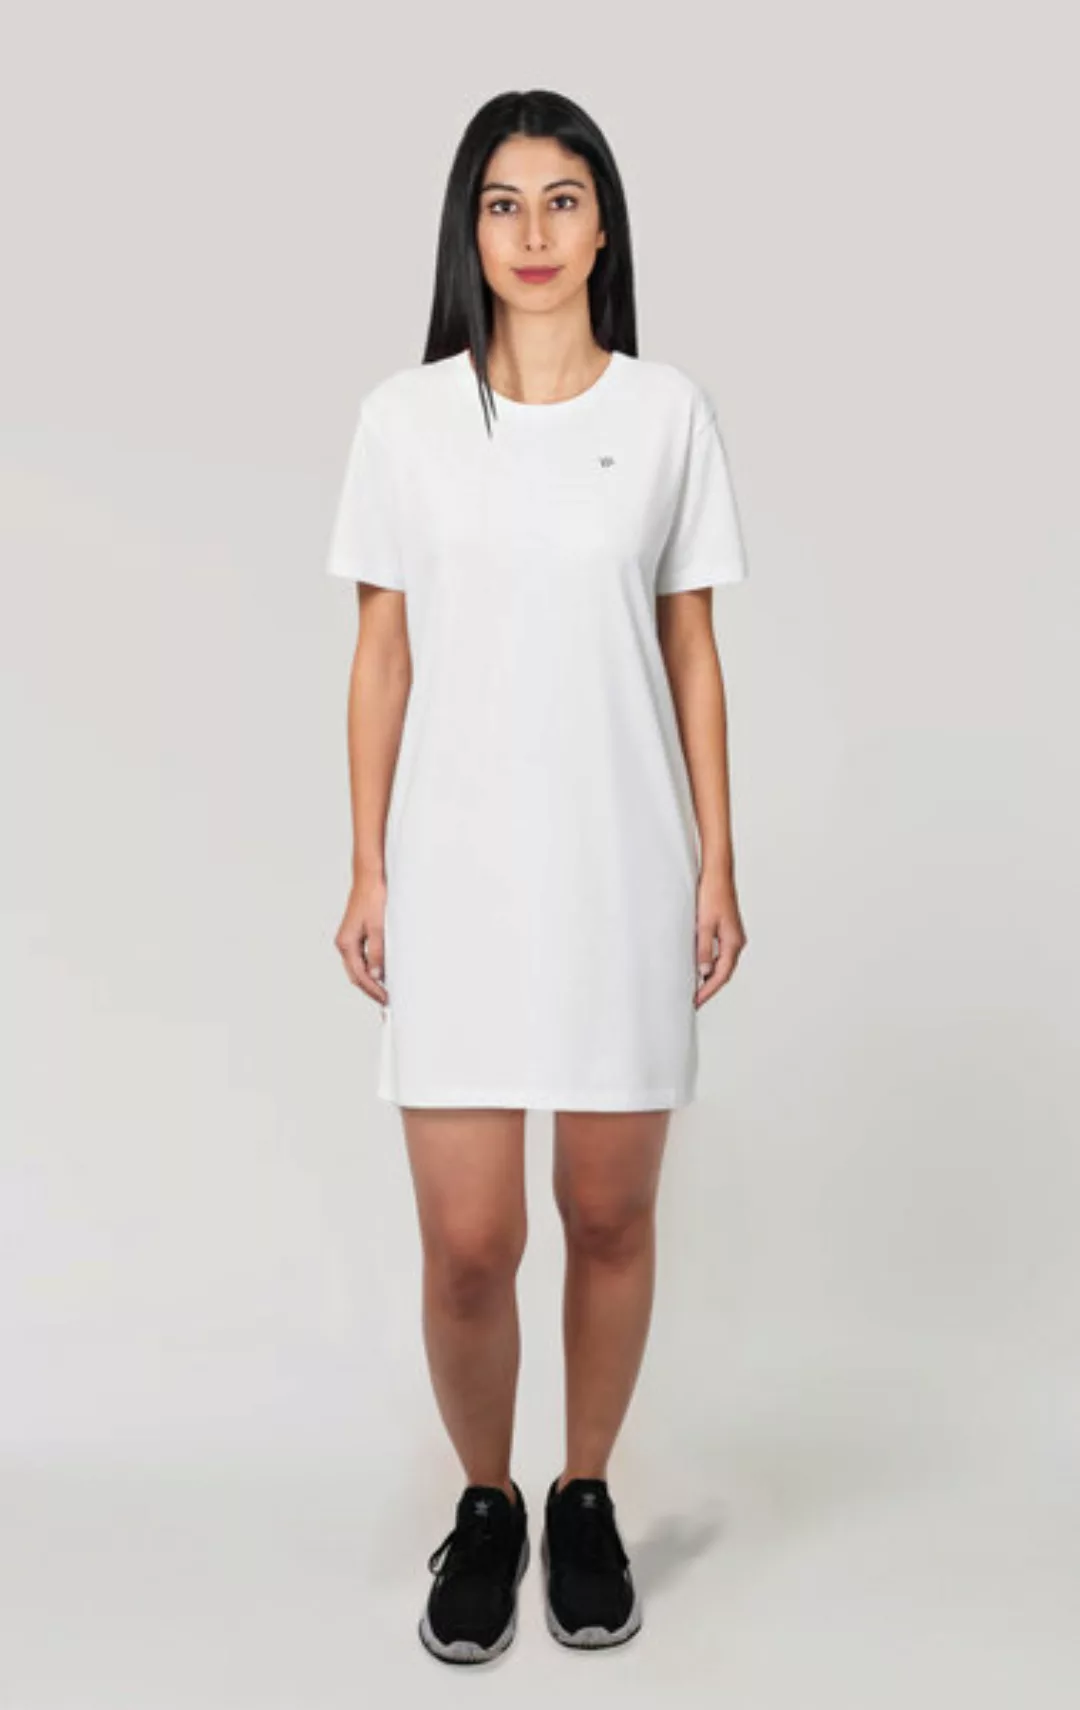 Frauen Kurzarm Kleid, T-shirt Kleid Aus Bio Baumwolle günstig online kaufen